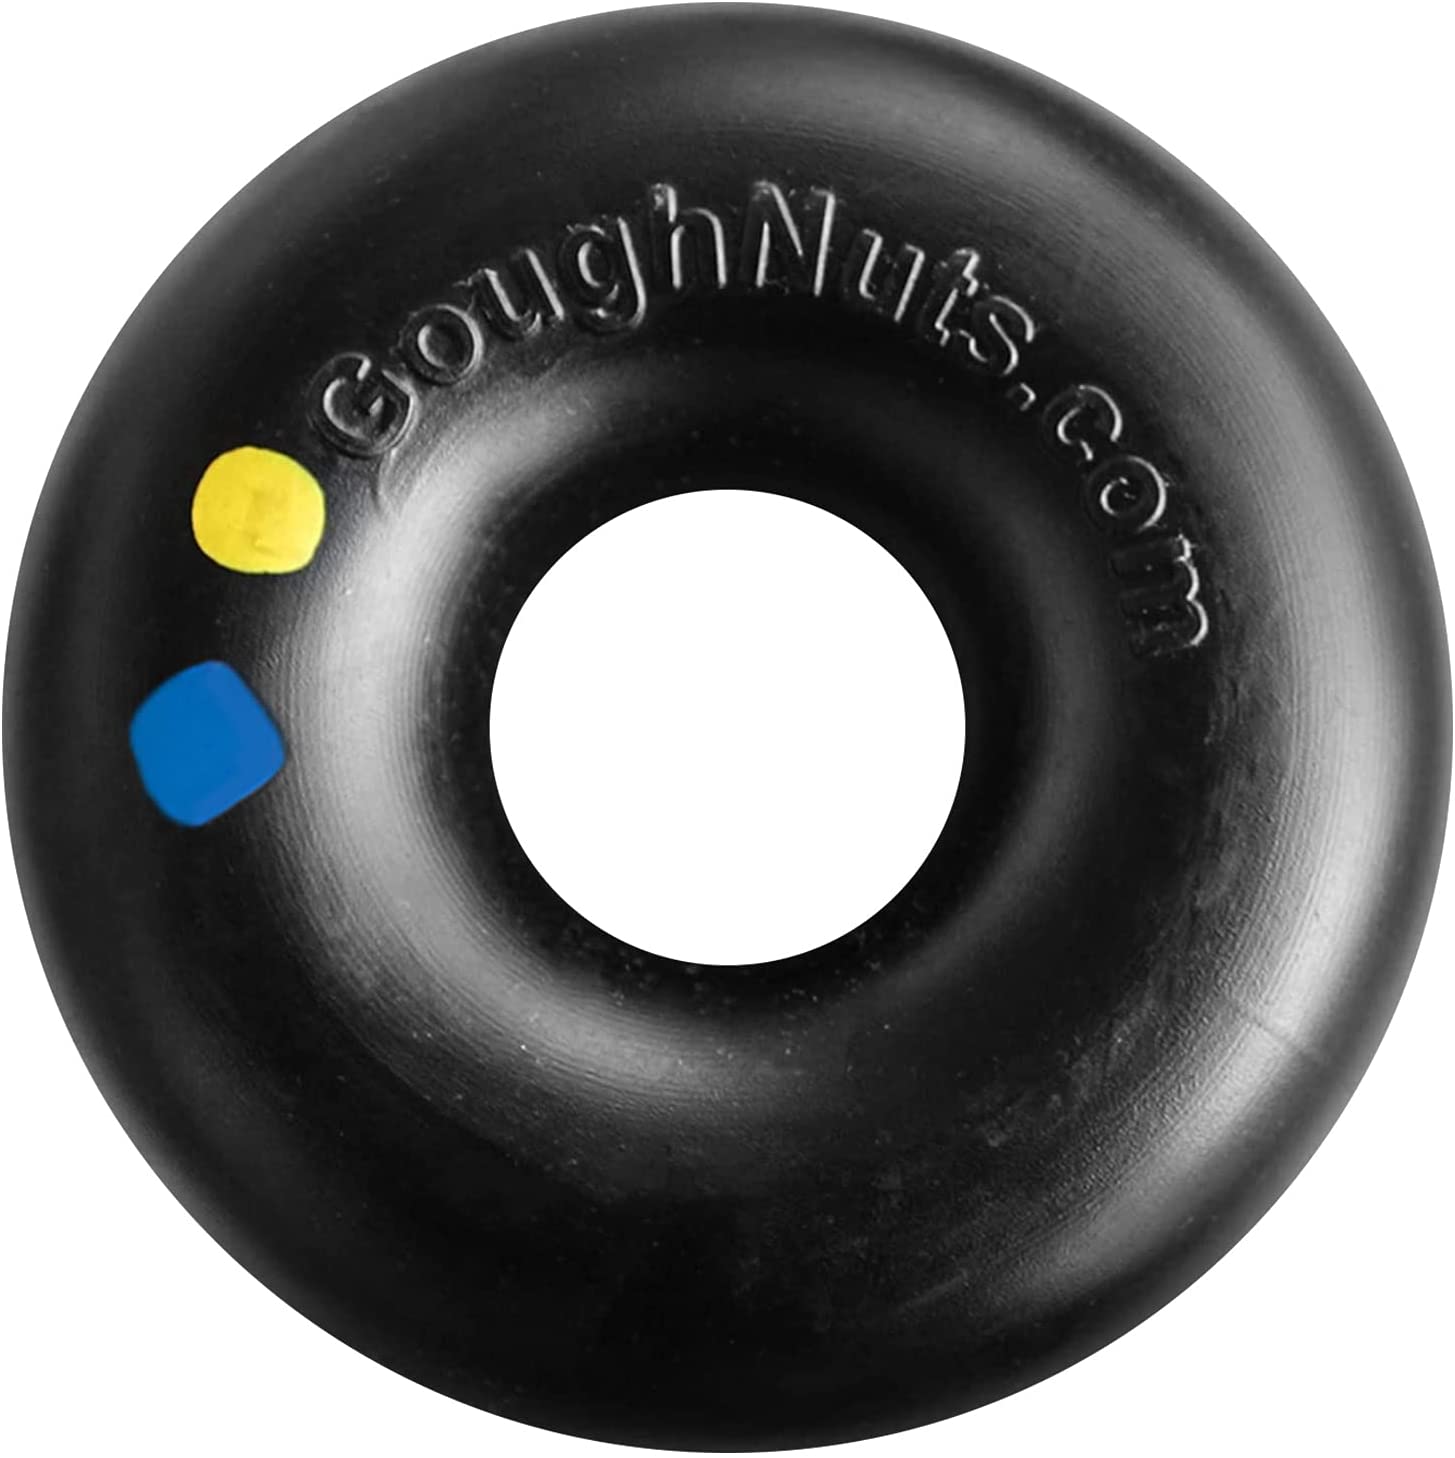 Goughnuts Maxx Black Heavy Duty Dog Chew Toy Ring